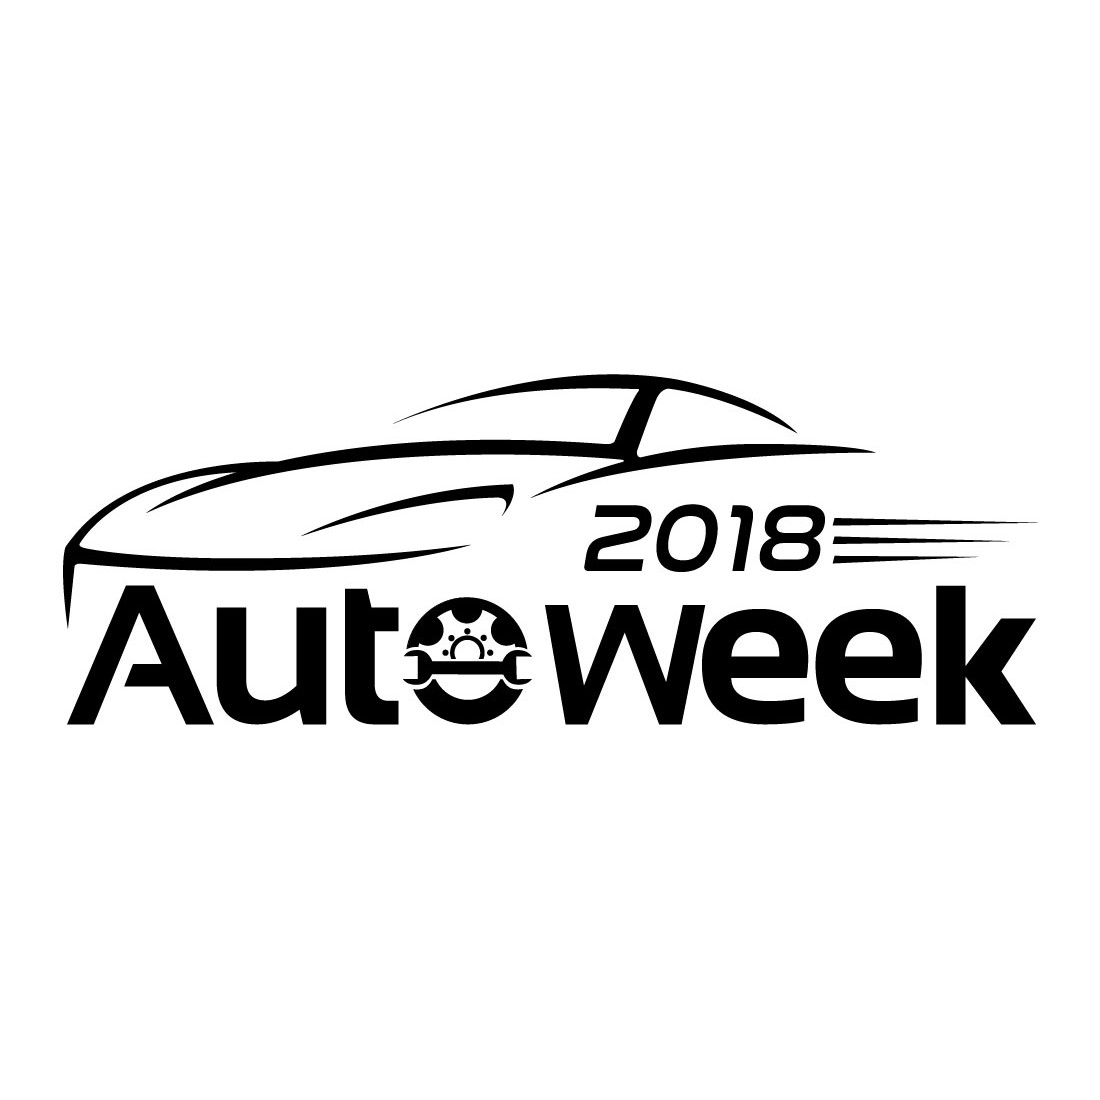 Automotive week